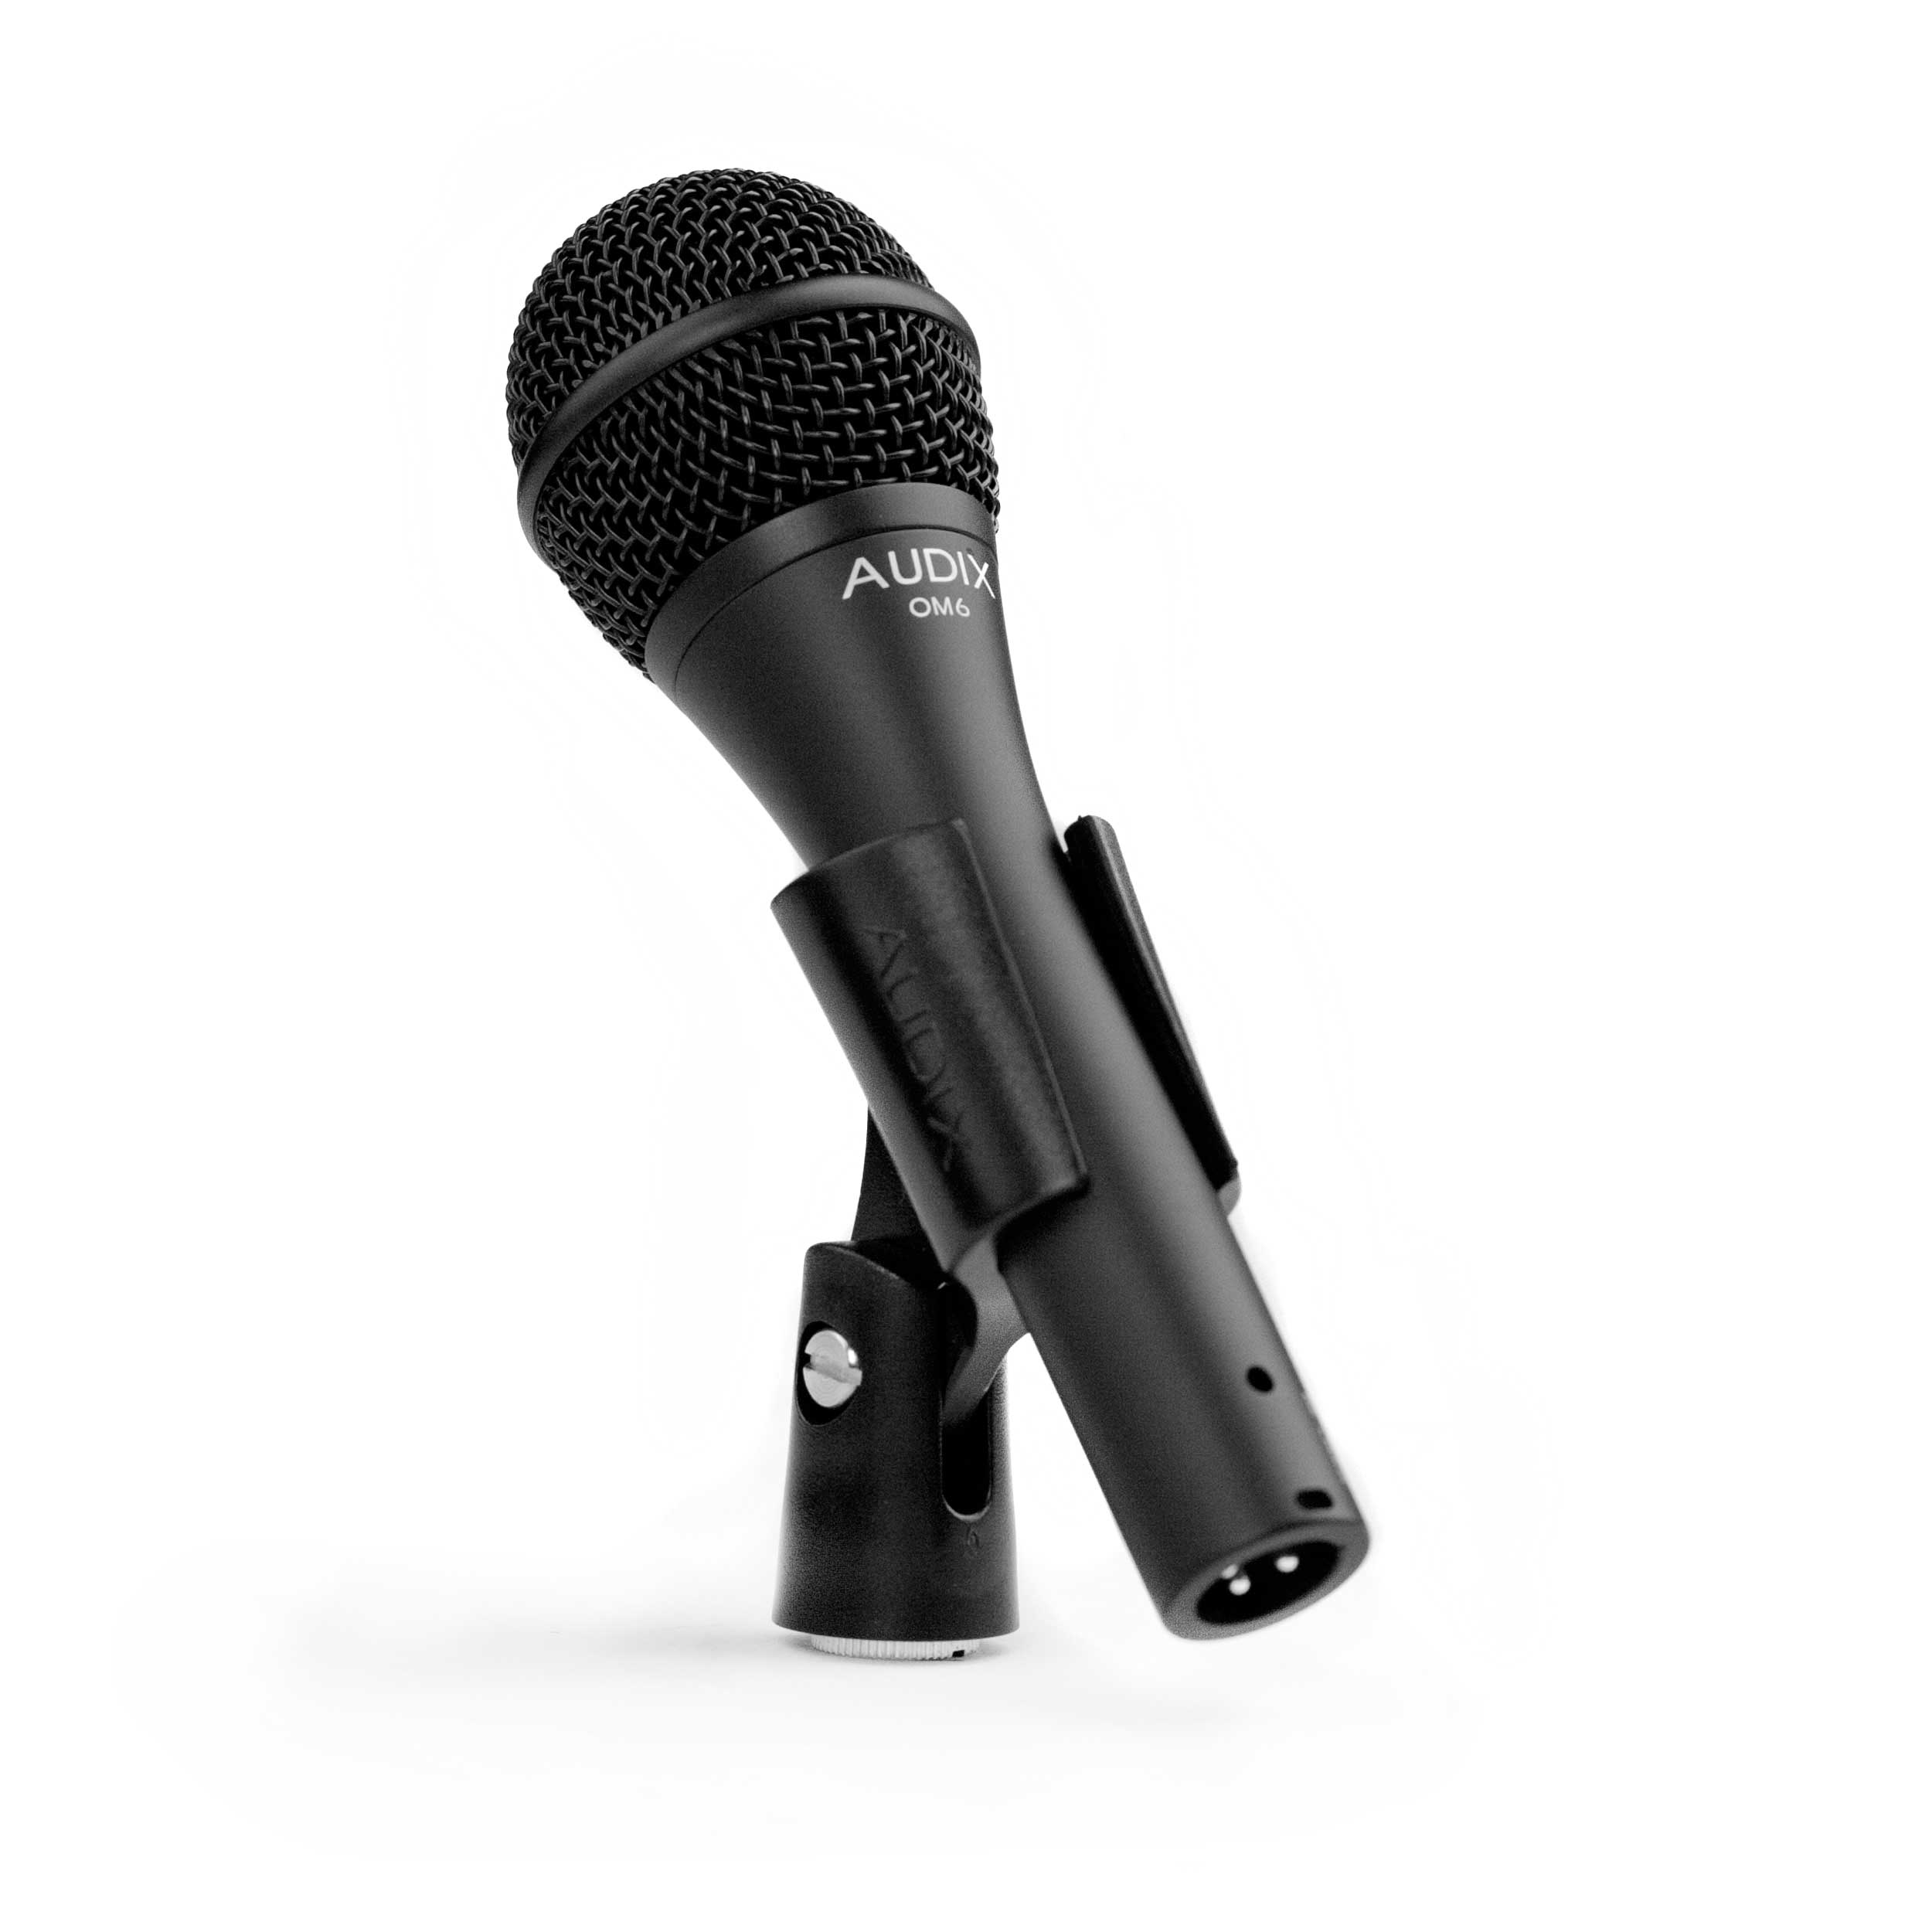 Купить вокальный. Микрофон Audix om2s. Микрофон Audix om5, черный. Вокальные микрофоны Audix vx5. Вокальный микрофон Audix f50.